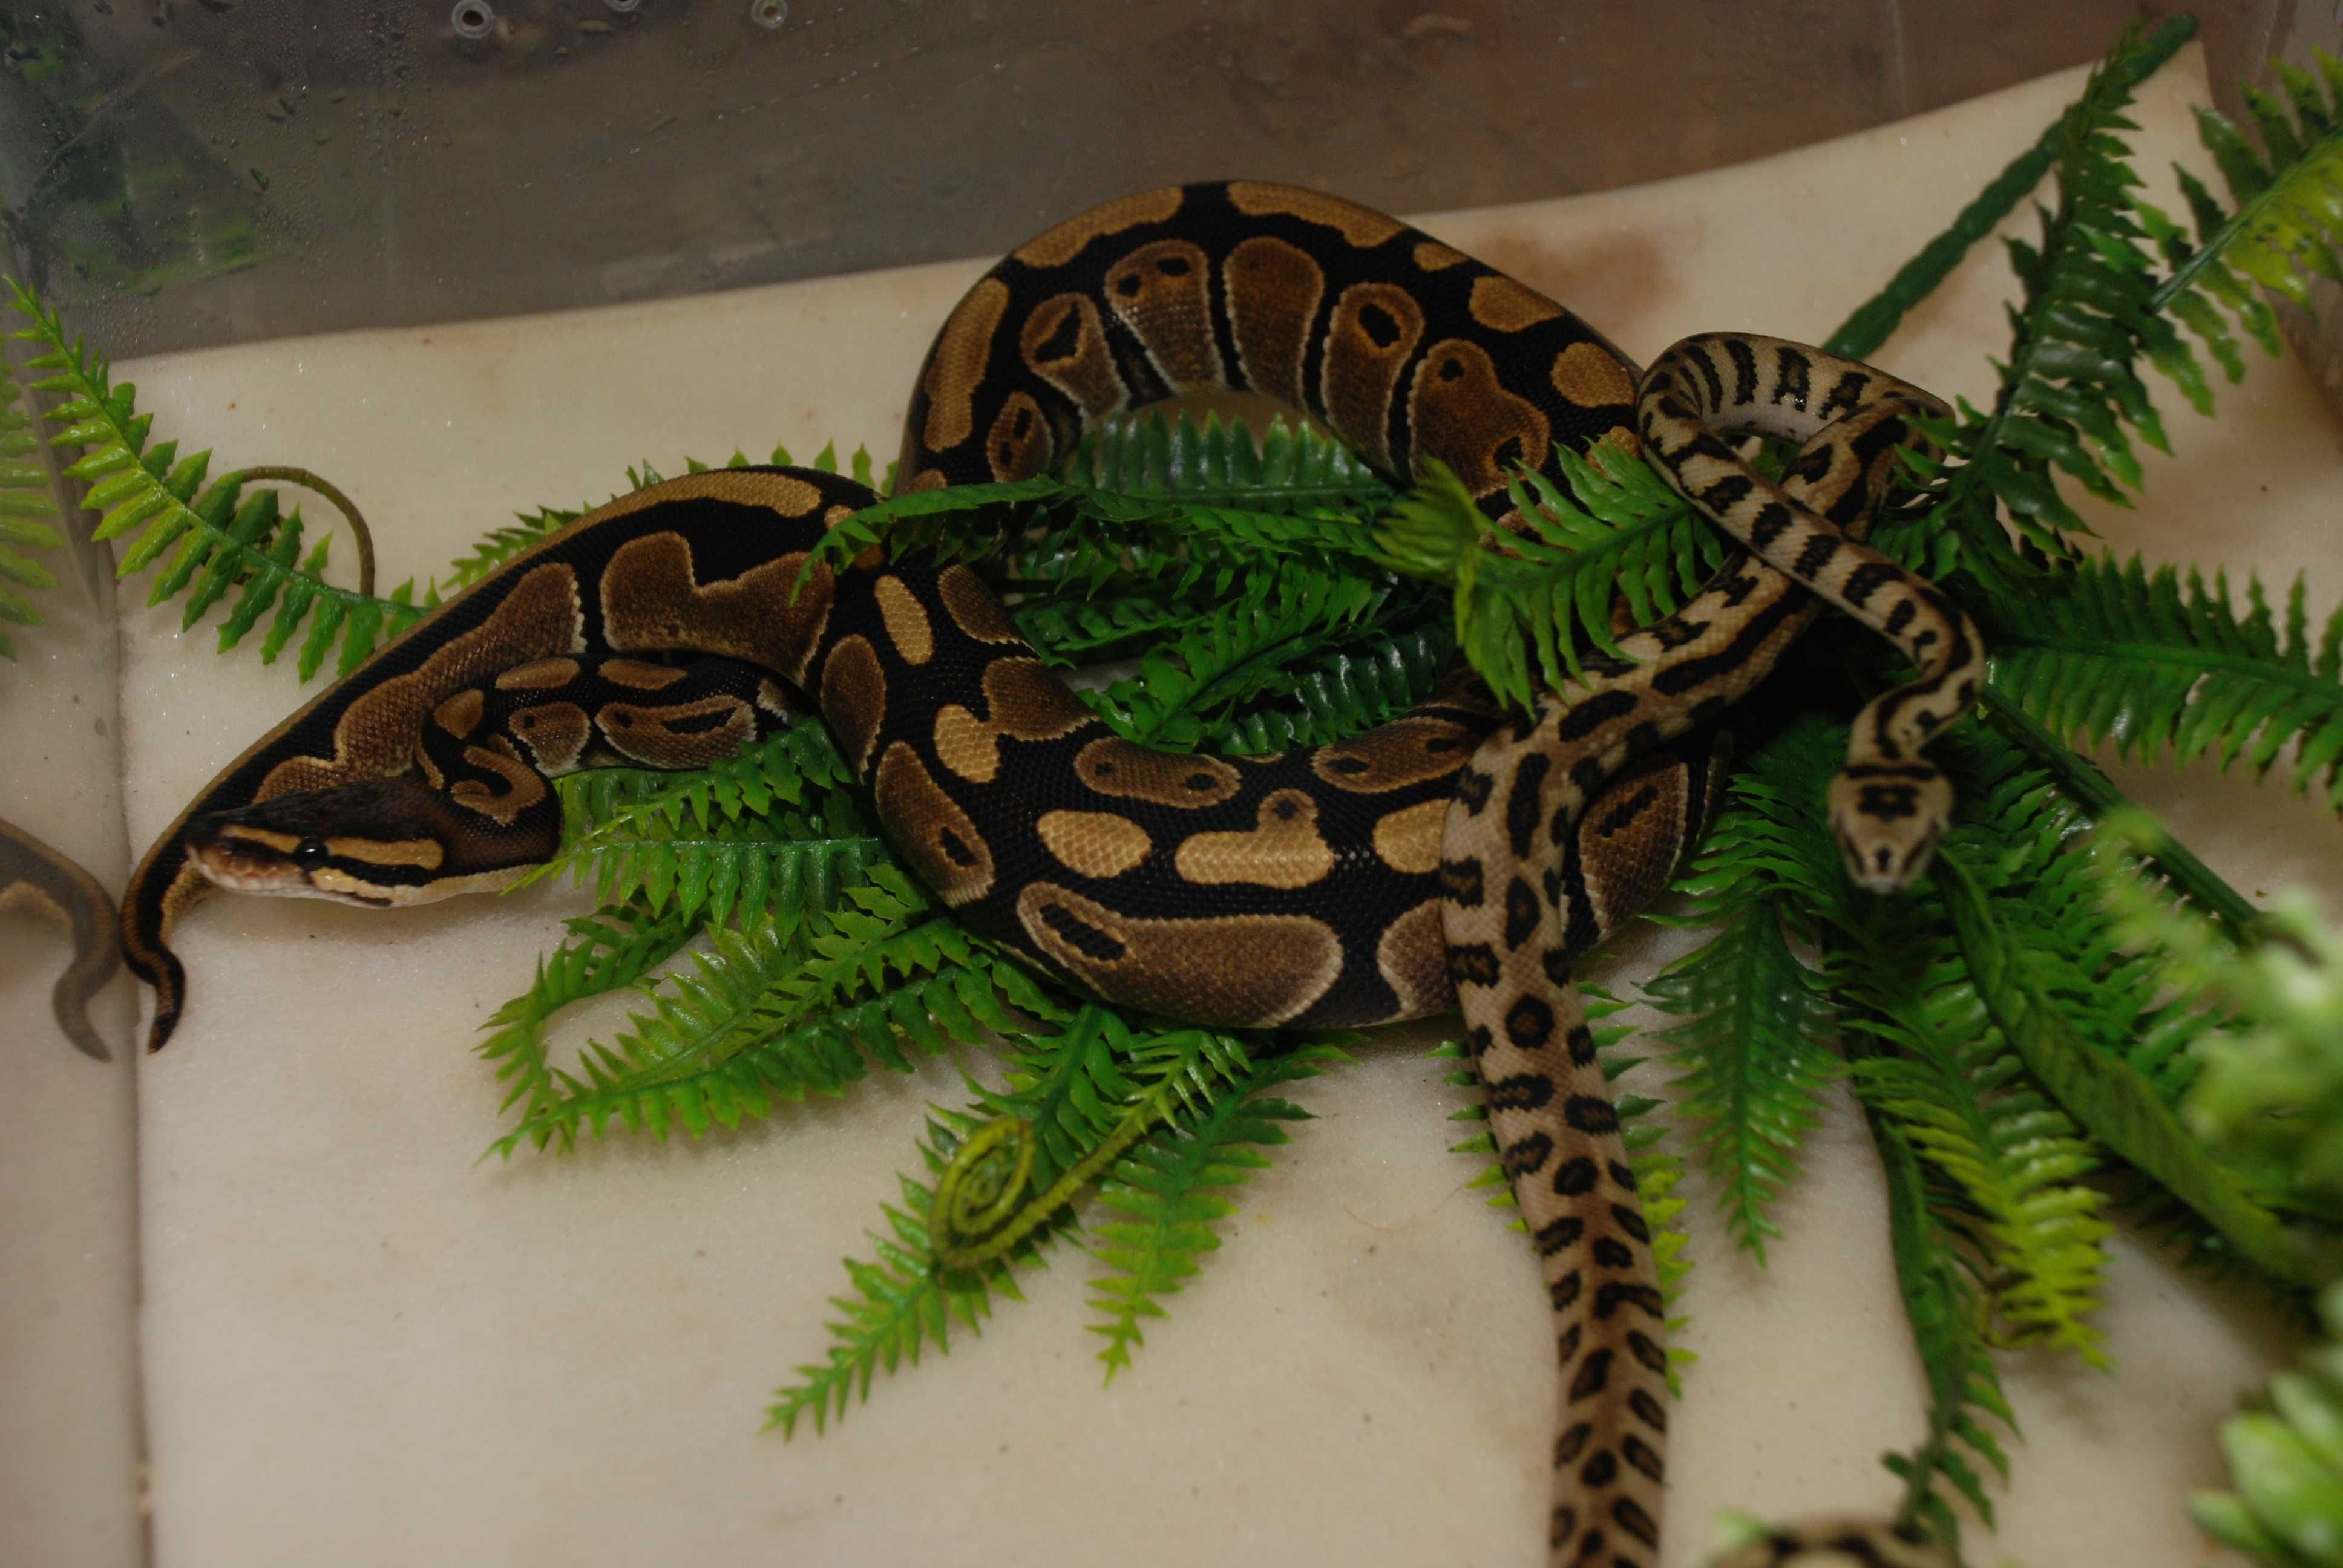 Королевский питон (шаровидный) Python regius - подростки и взрослые